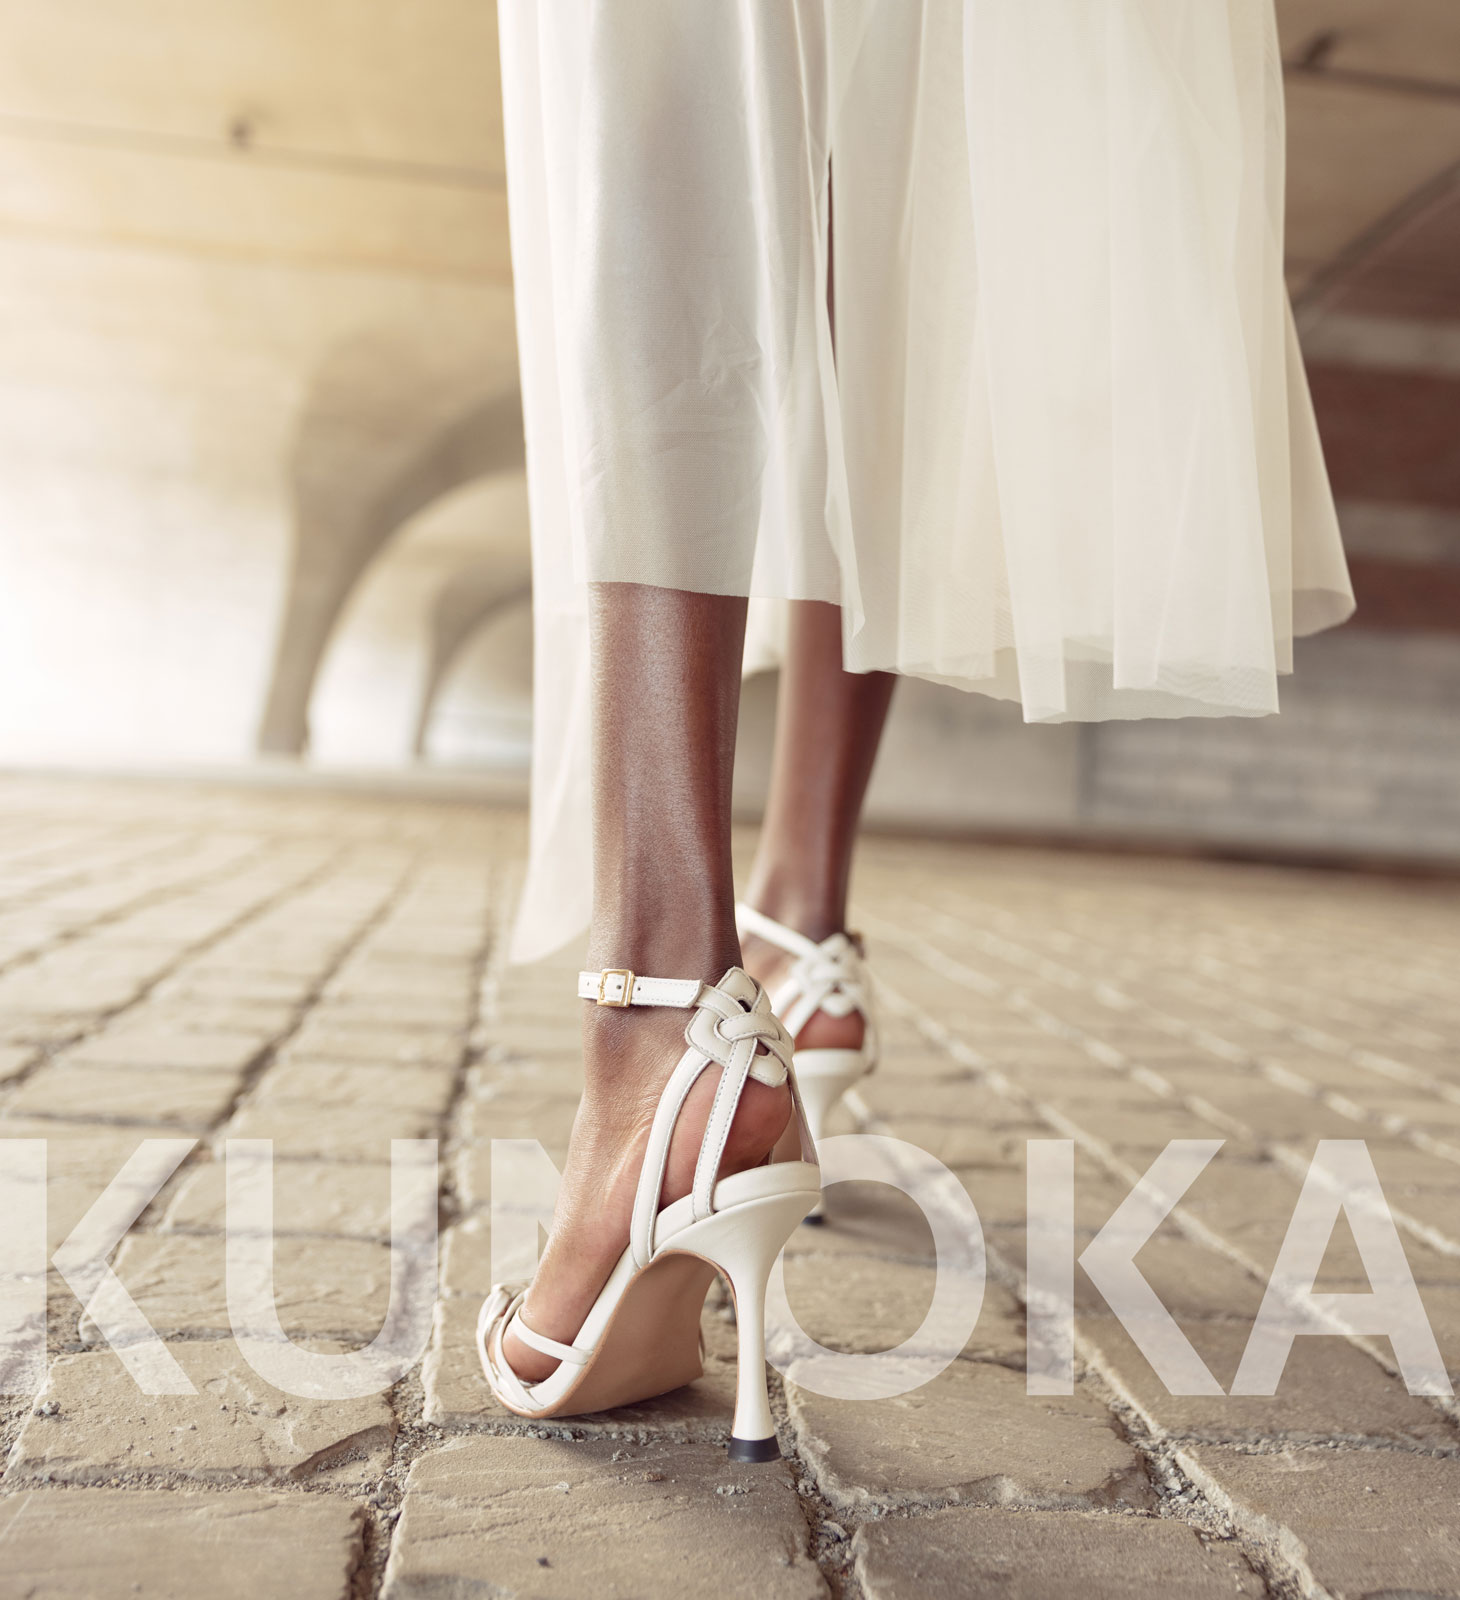 Loop op wolkjes met de catchy schoenen van Kunoka